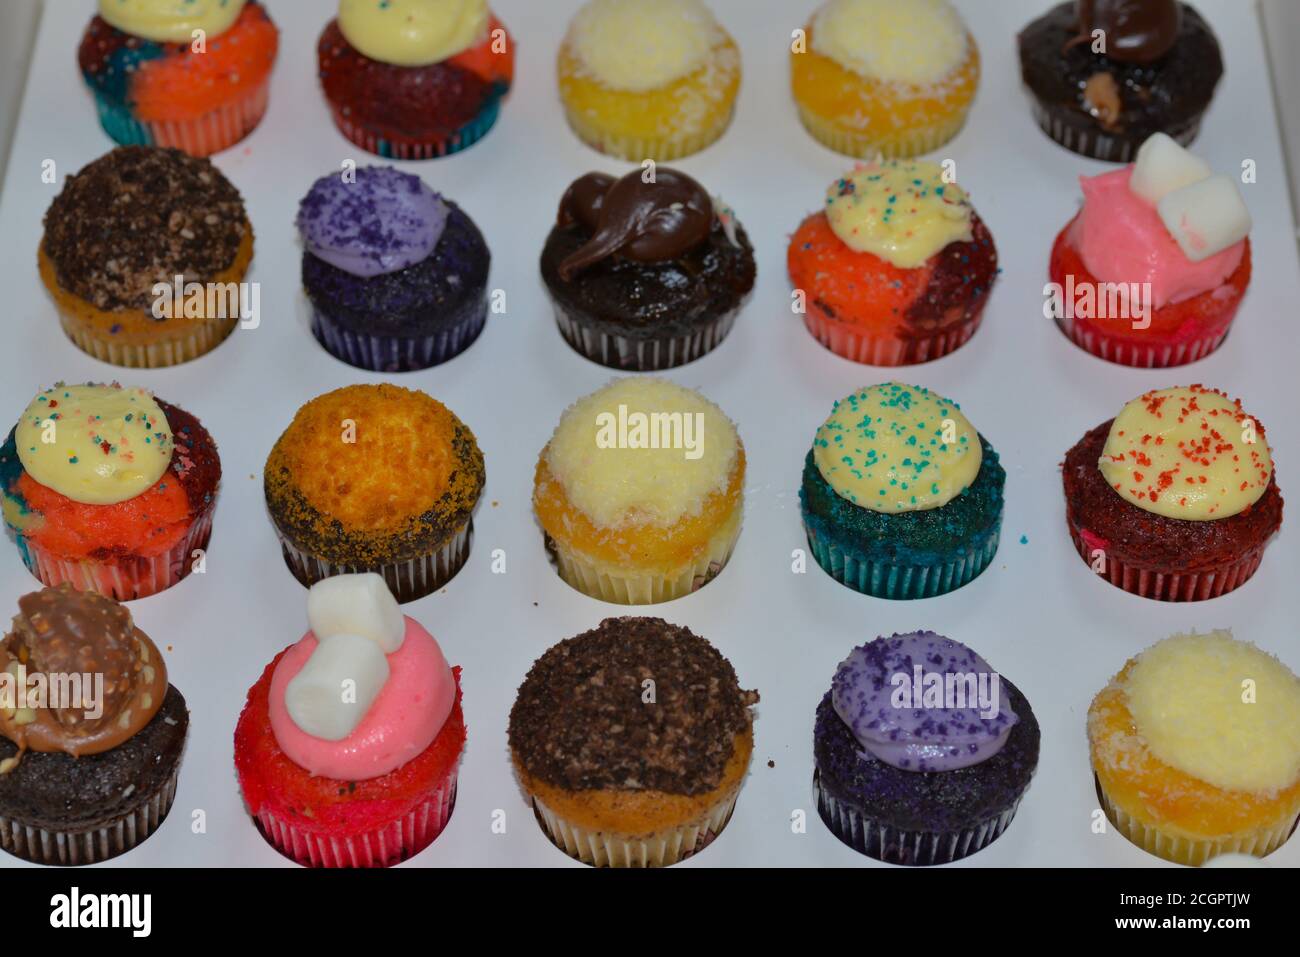 petits gâteaux aux couleurs vives et bonbons colorés Banque D'Images